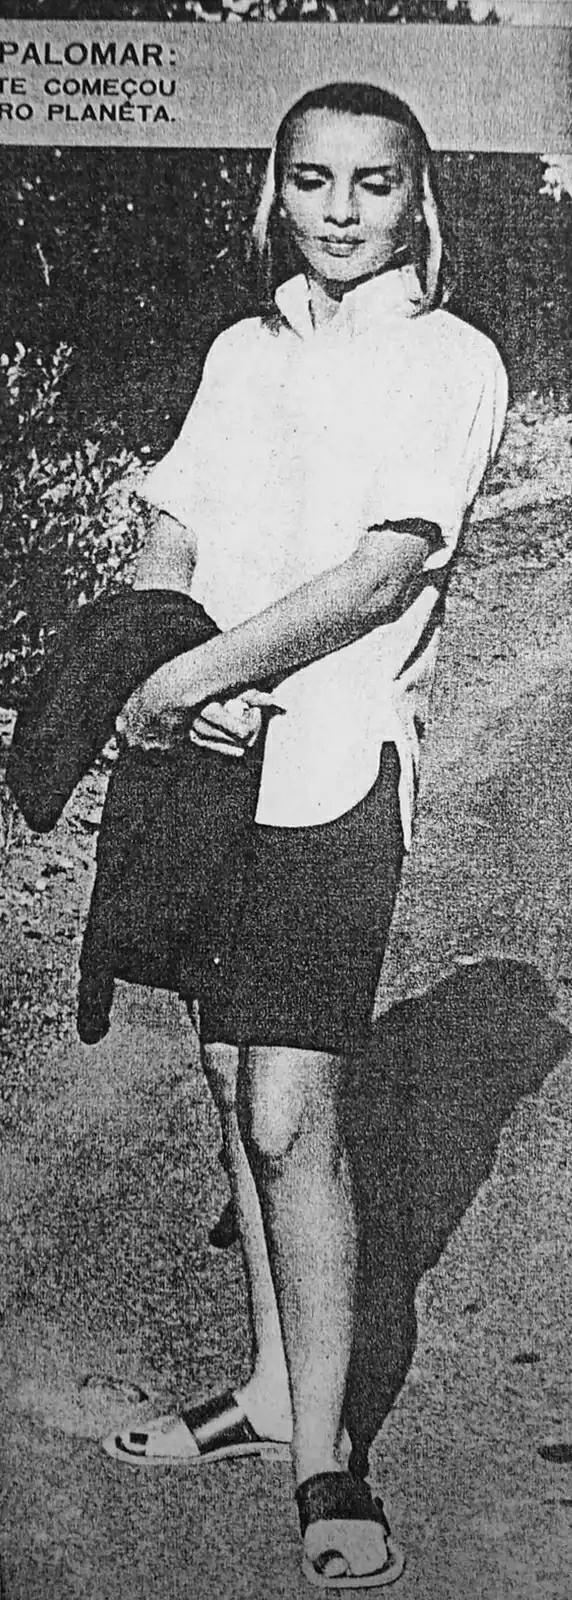 Podivná žena v roce 1954 na konferenci Palomar UFO